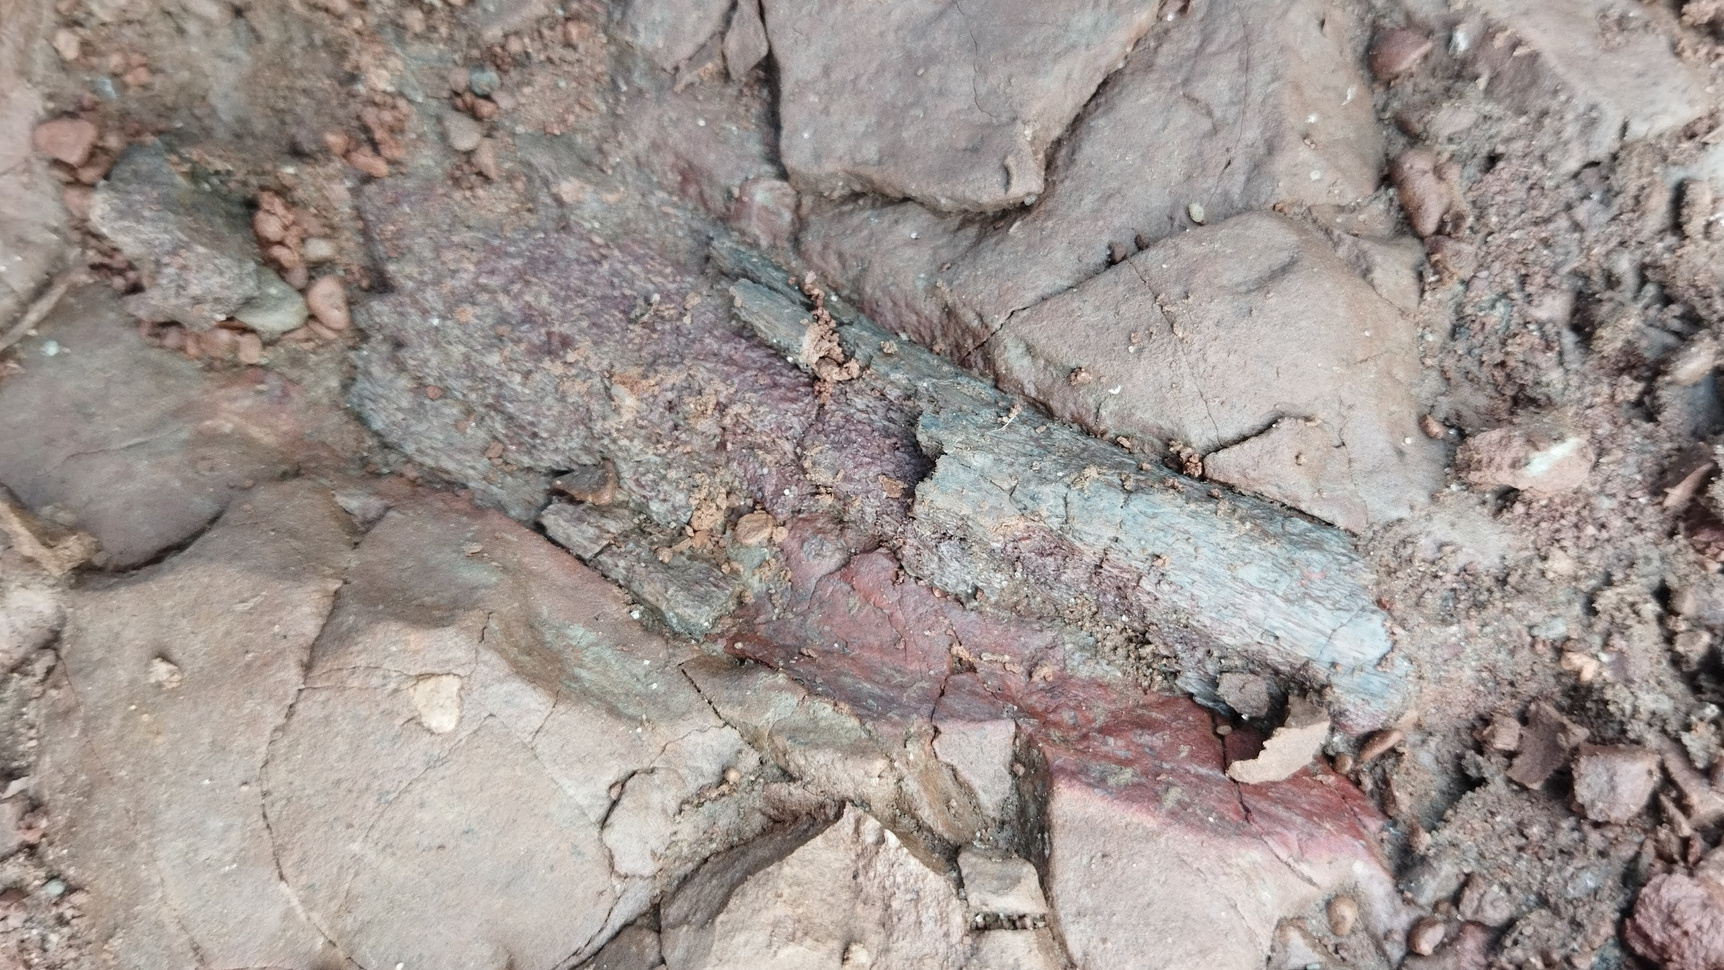 Фельдшер из Магнитогорска попросила откликнуться пермячку, нашедшую останки рептилии, жившей 260 млн лет назад